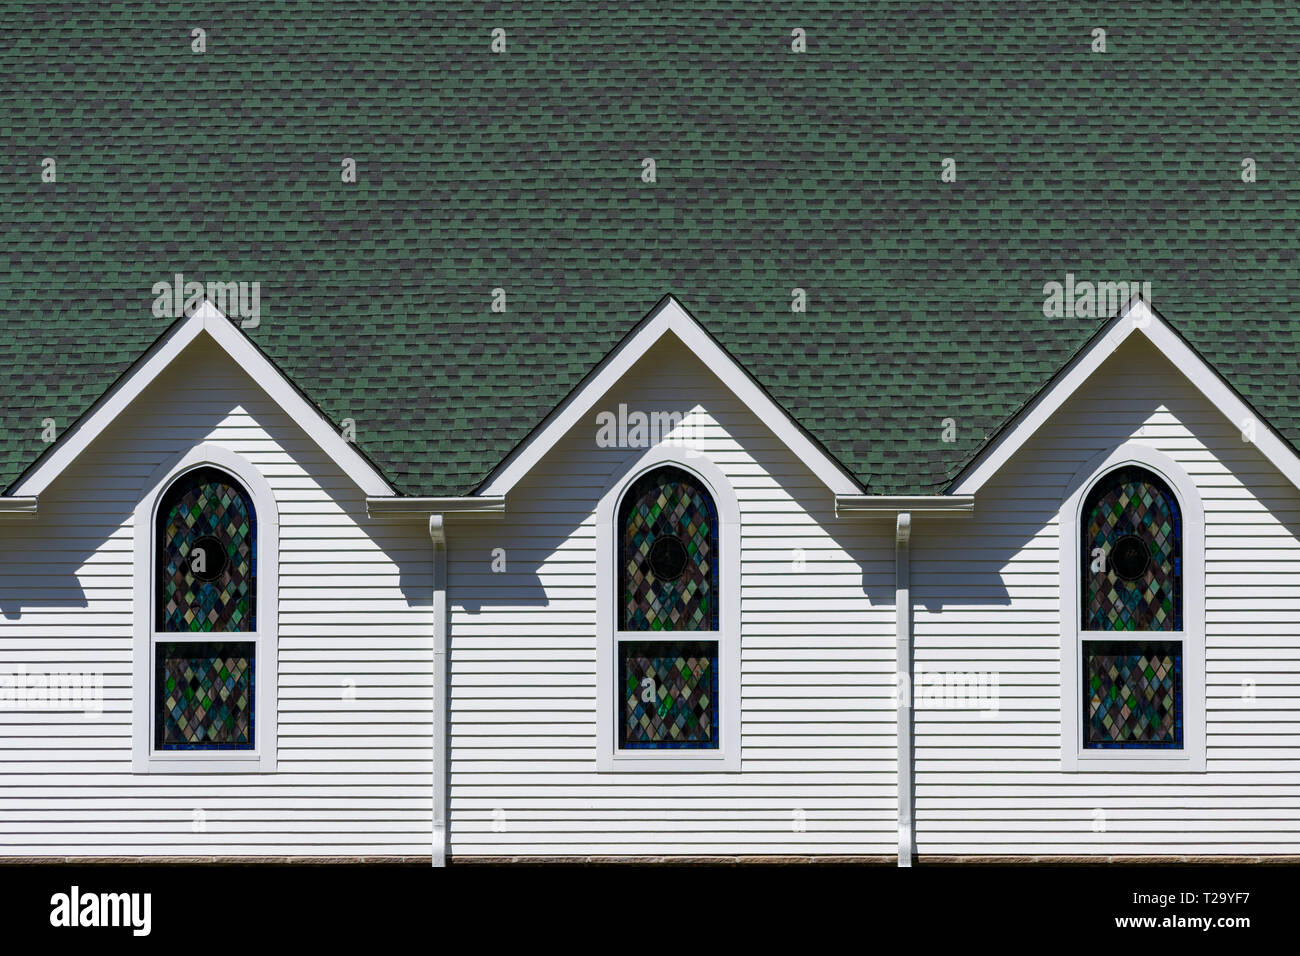 Vue extérieure du toit vert foncé et blanc lumineux mur d'église, avec trois pignons de toit triangulaire au-dessus de trois vitraux Banque D'Images